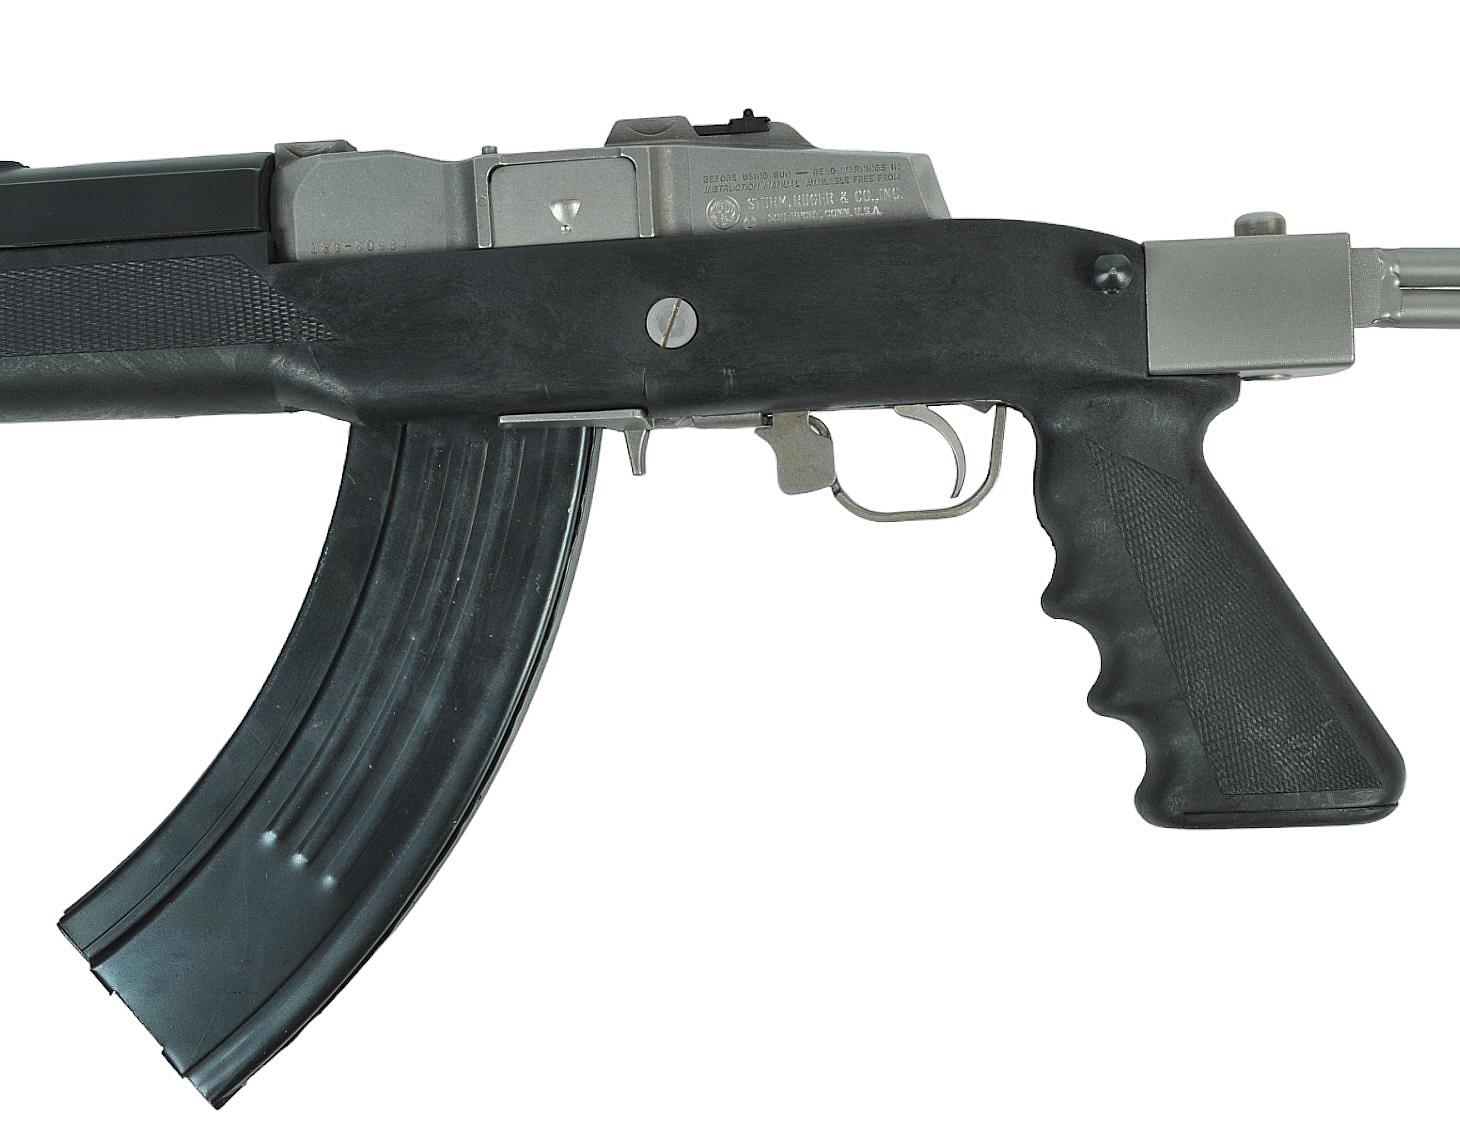 Ruger Mini-30 7.62x39mm Semi-Automatic Rifle - FFL # 189-60984 (MGX1)